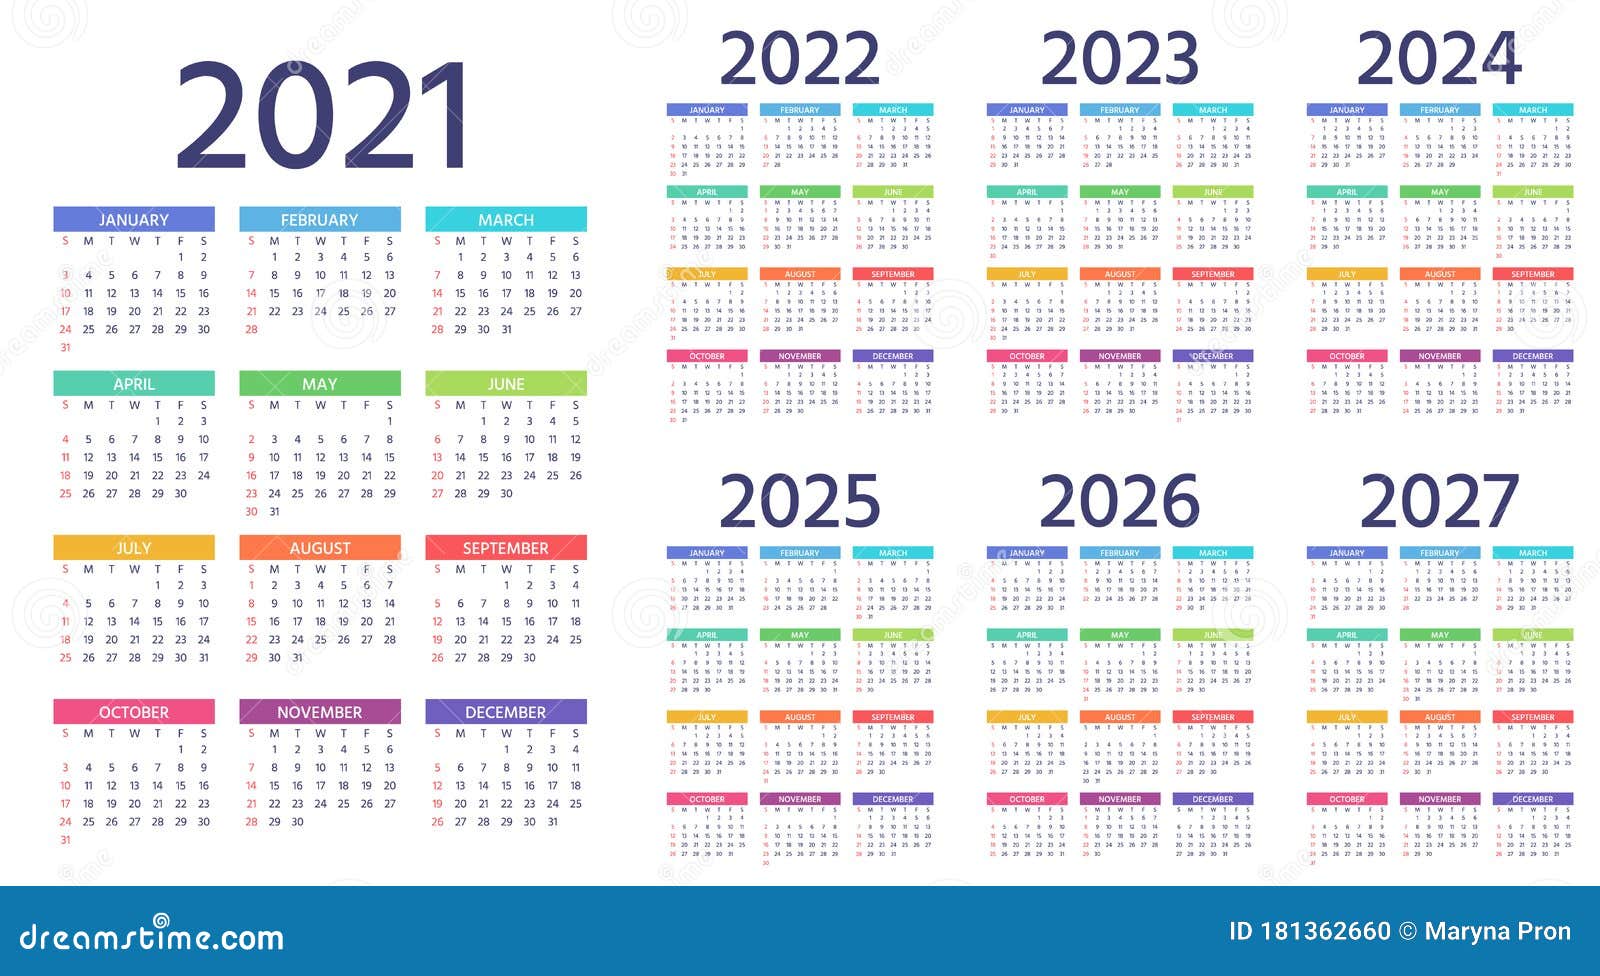 На 2024 2025 годы или года. Календарь 2022 2023 2024 2025. Календарь 2021-2022. Календарь 2021-2025. Календарь 2022-2023 год.